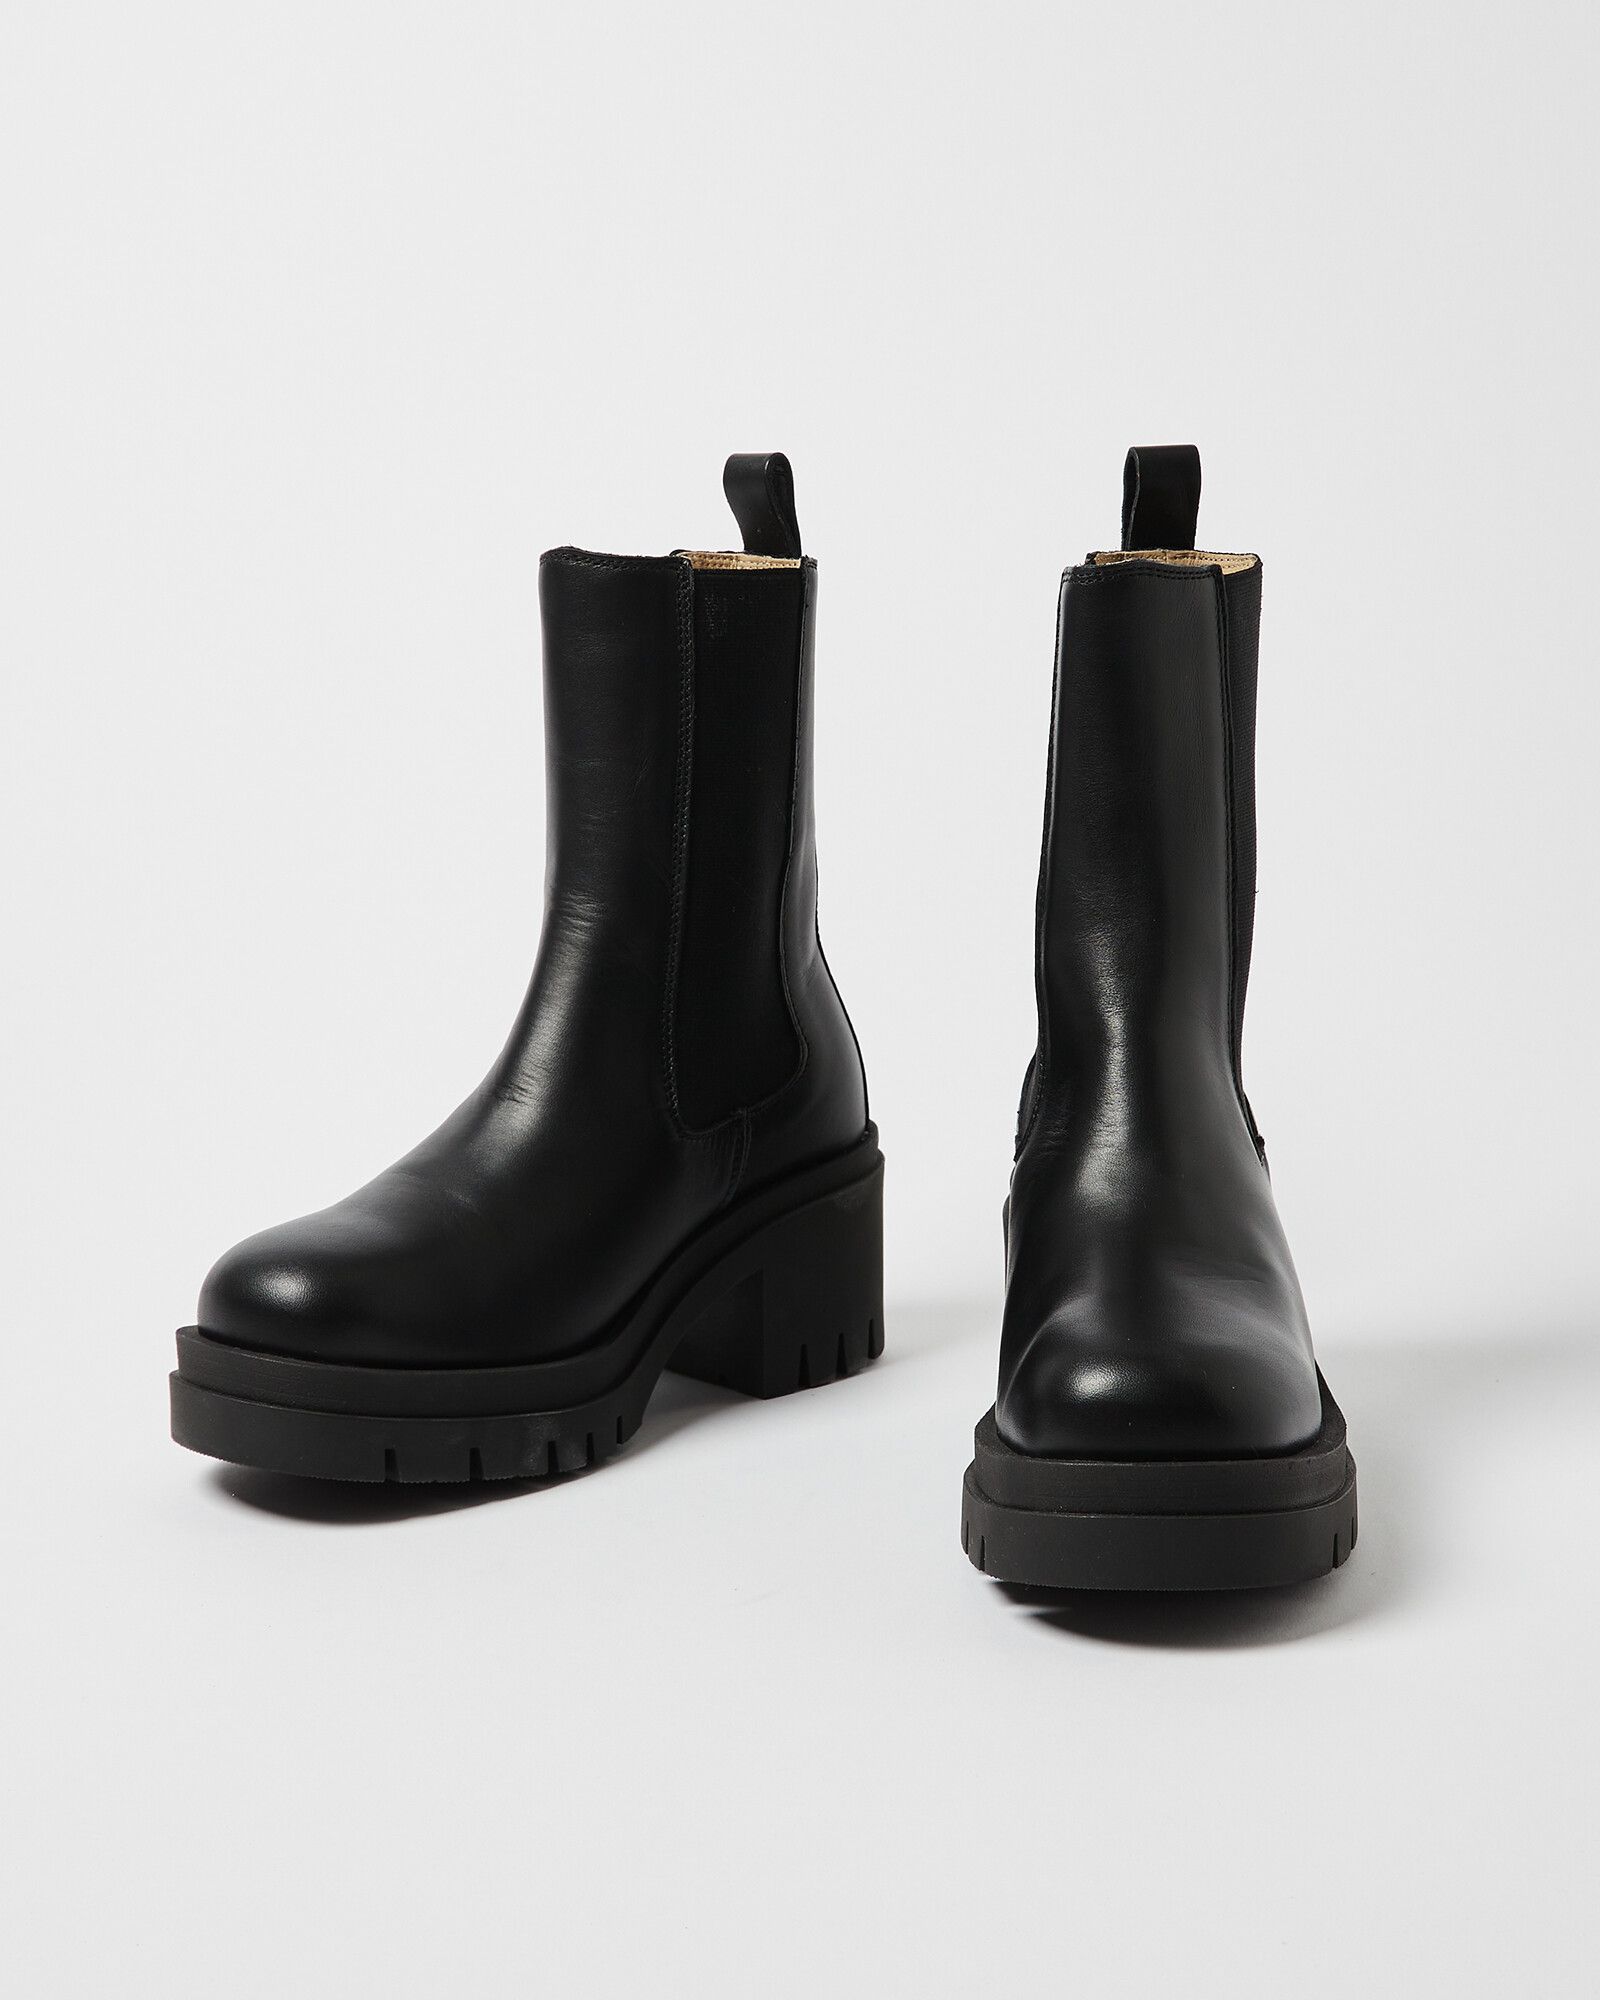 Selected Femme Sage Black Leather Heeled Chelsea Boots | Oliver Bonas